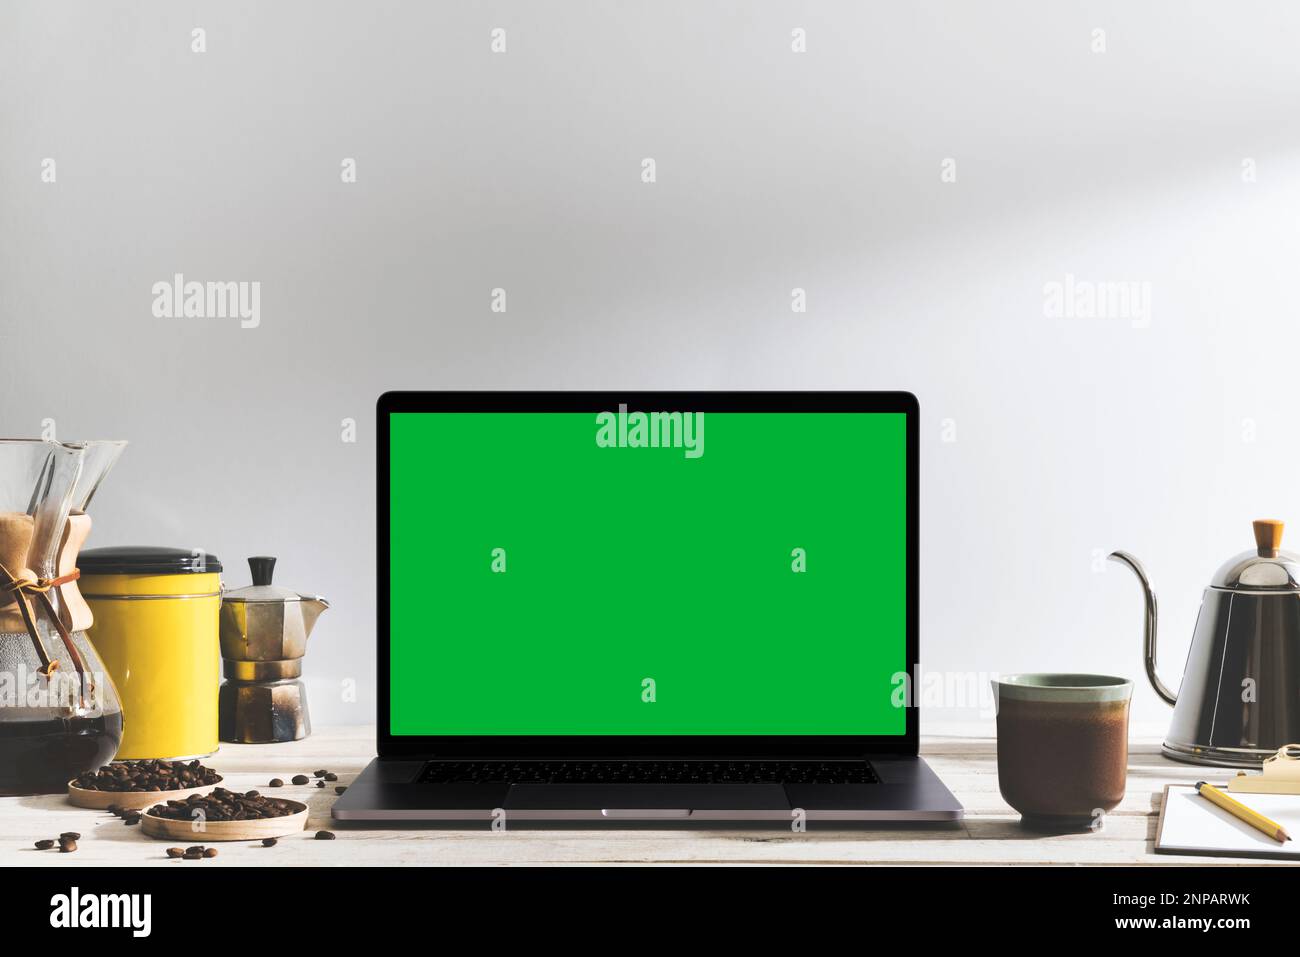 Laptop mit grünem Chroma Key-Bildschirm und Werkzeuge zum Brühen von Kaffee auf dem Tisch vor dem weißen Hintergrund. Tischaufnahme des Innenraums mit effektivem Fensterlicht Stockfoto